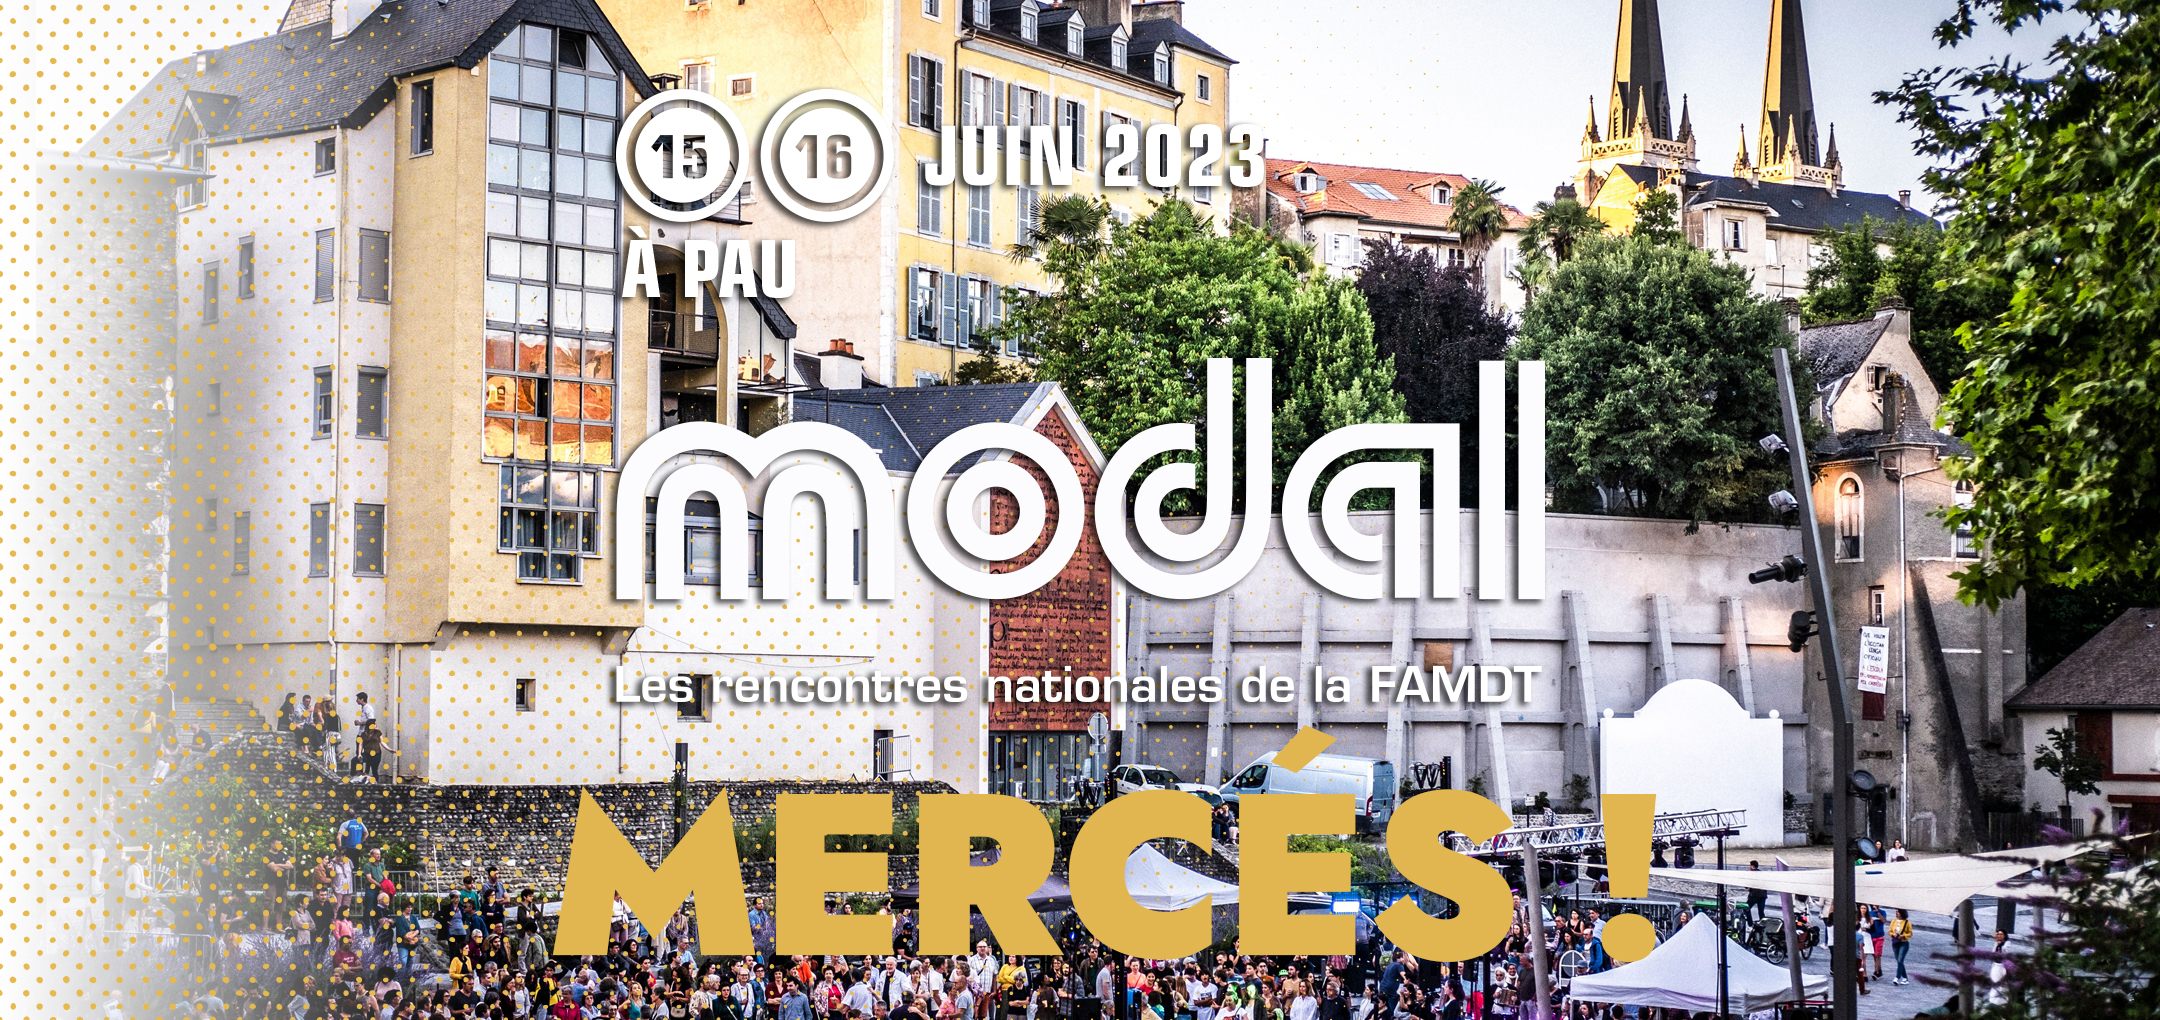 You are currently viewing Communiqué de sortie – Modal, les rencontres 2023 à Pau